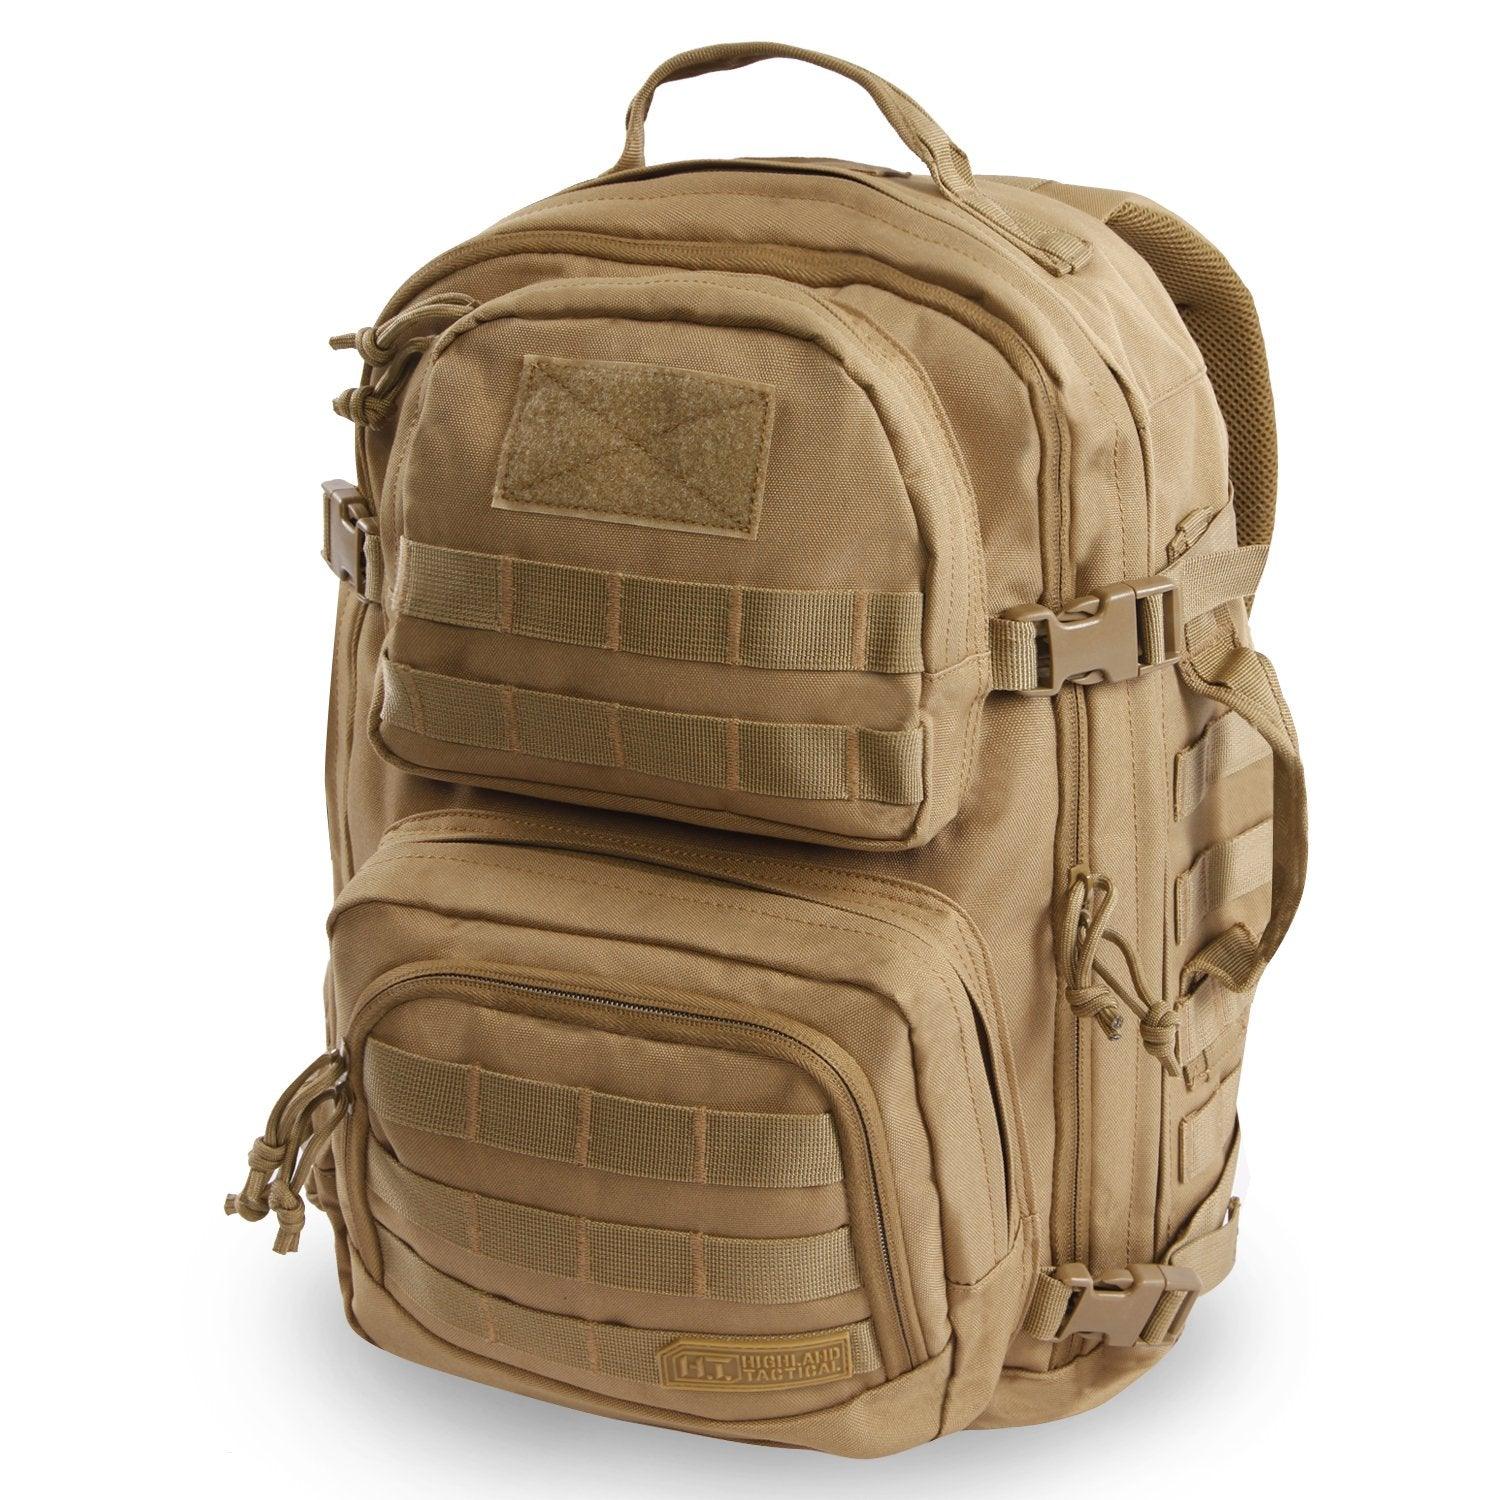 Backpack Major